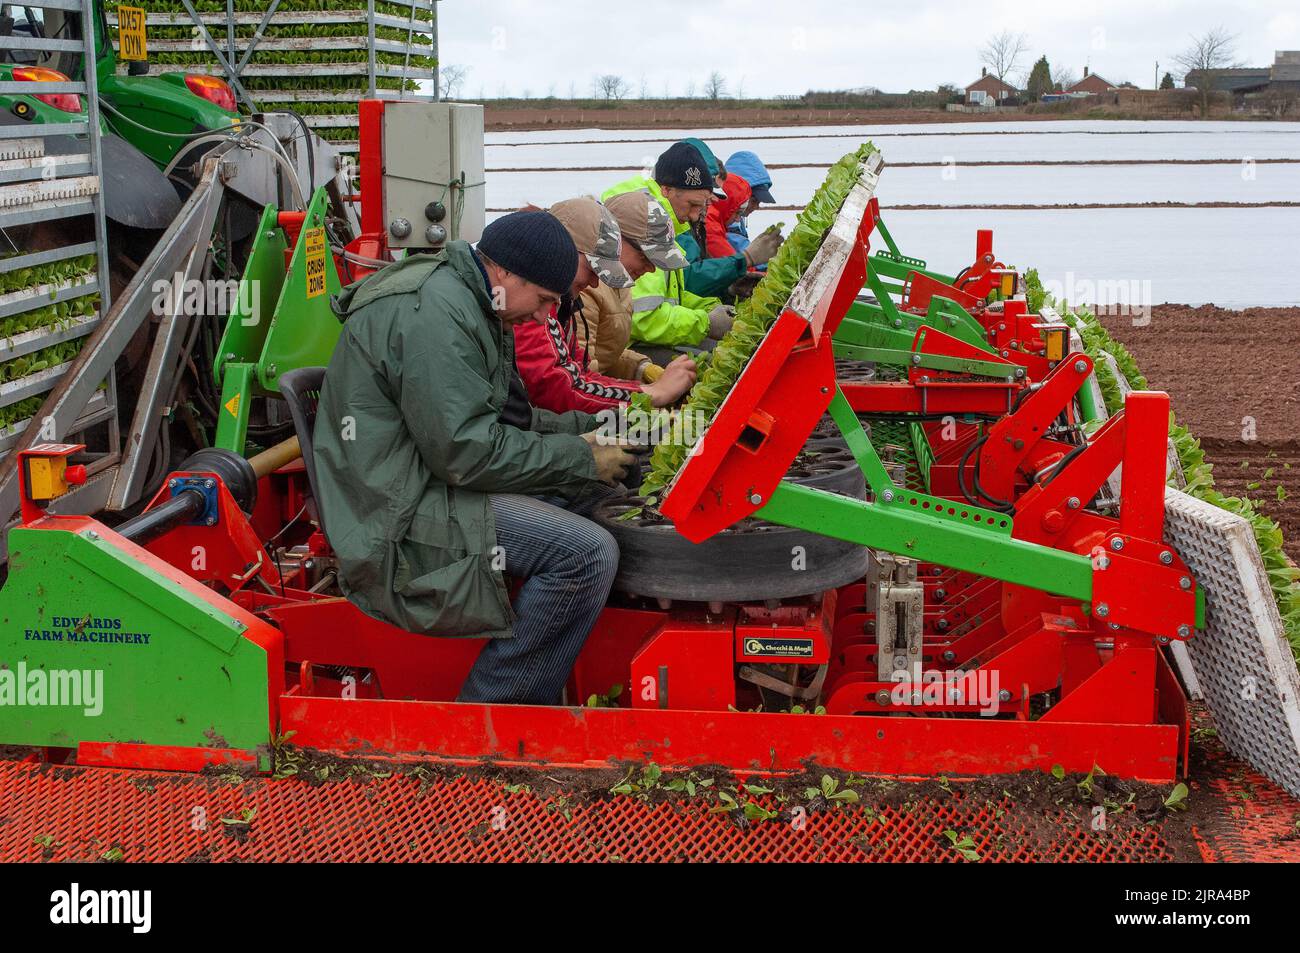 Travailleurs sur une machine à 16 rangs plantant de la laitue Iceberg, Shropshire, Royaume-Uni Banque D'Images